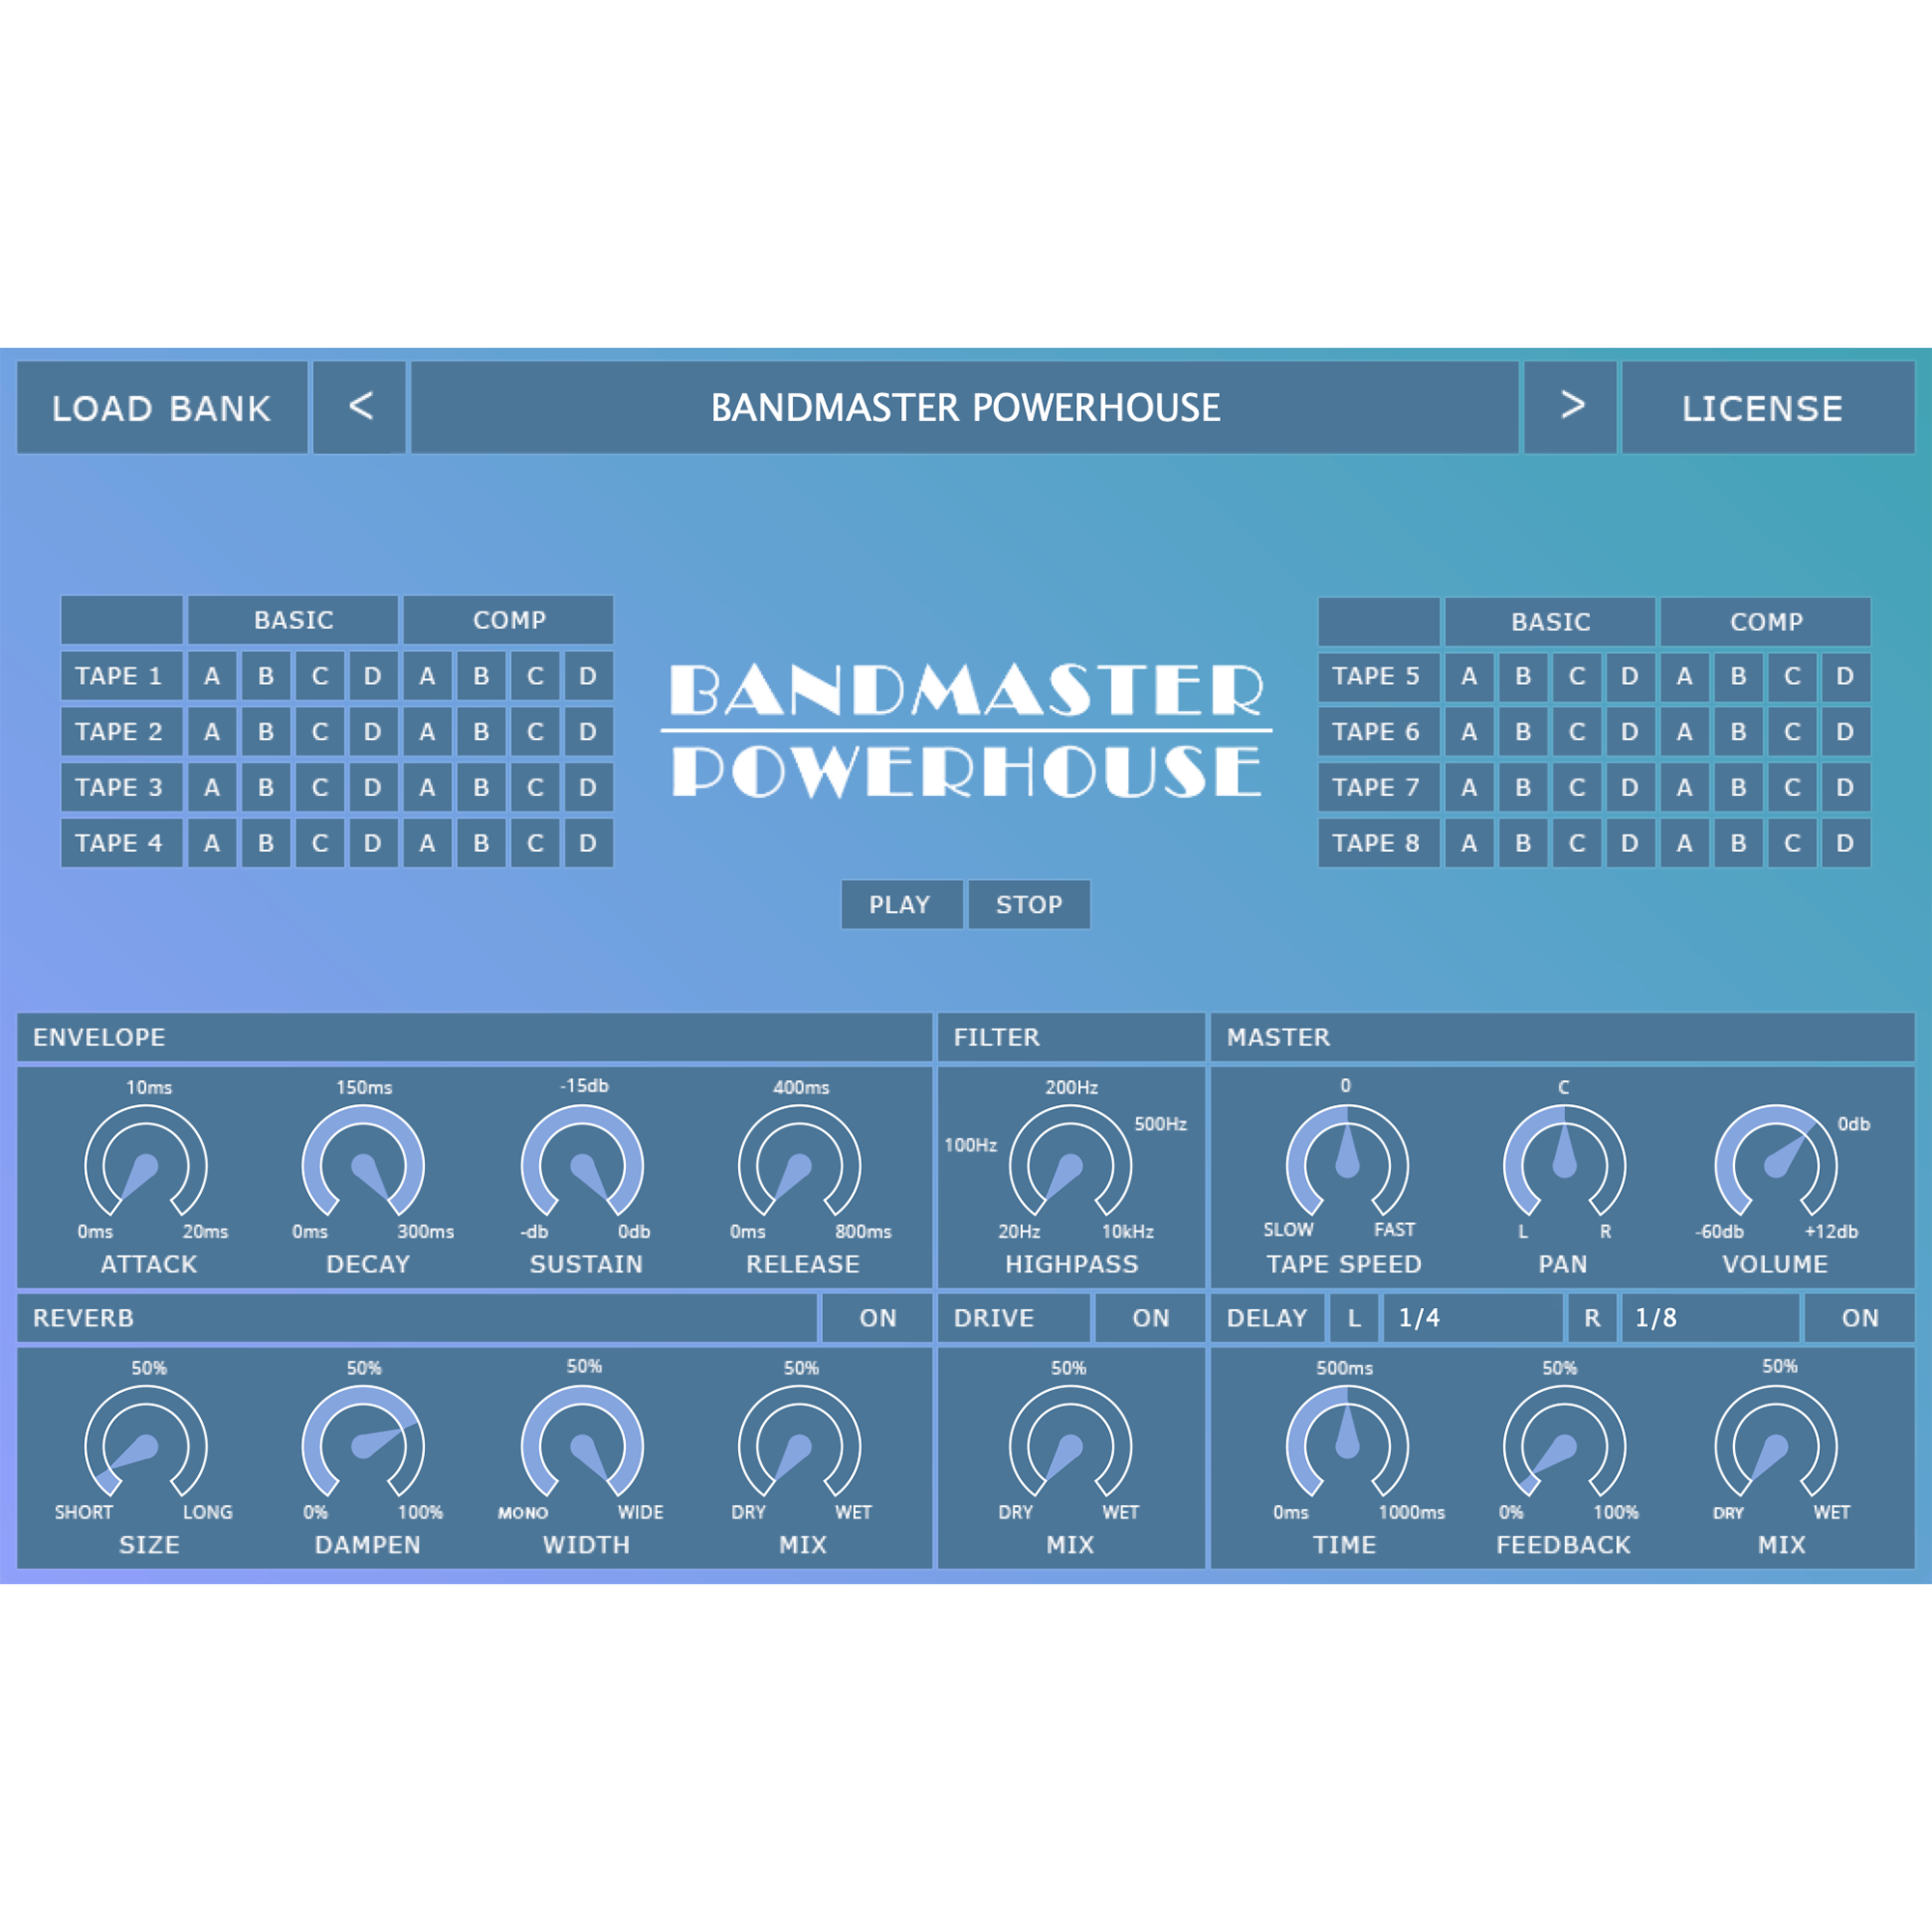 Bandmaster-Powerhouse-Product-Image-Cropped-1